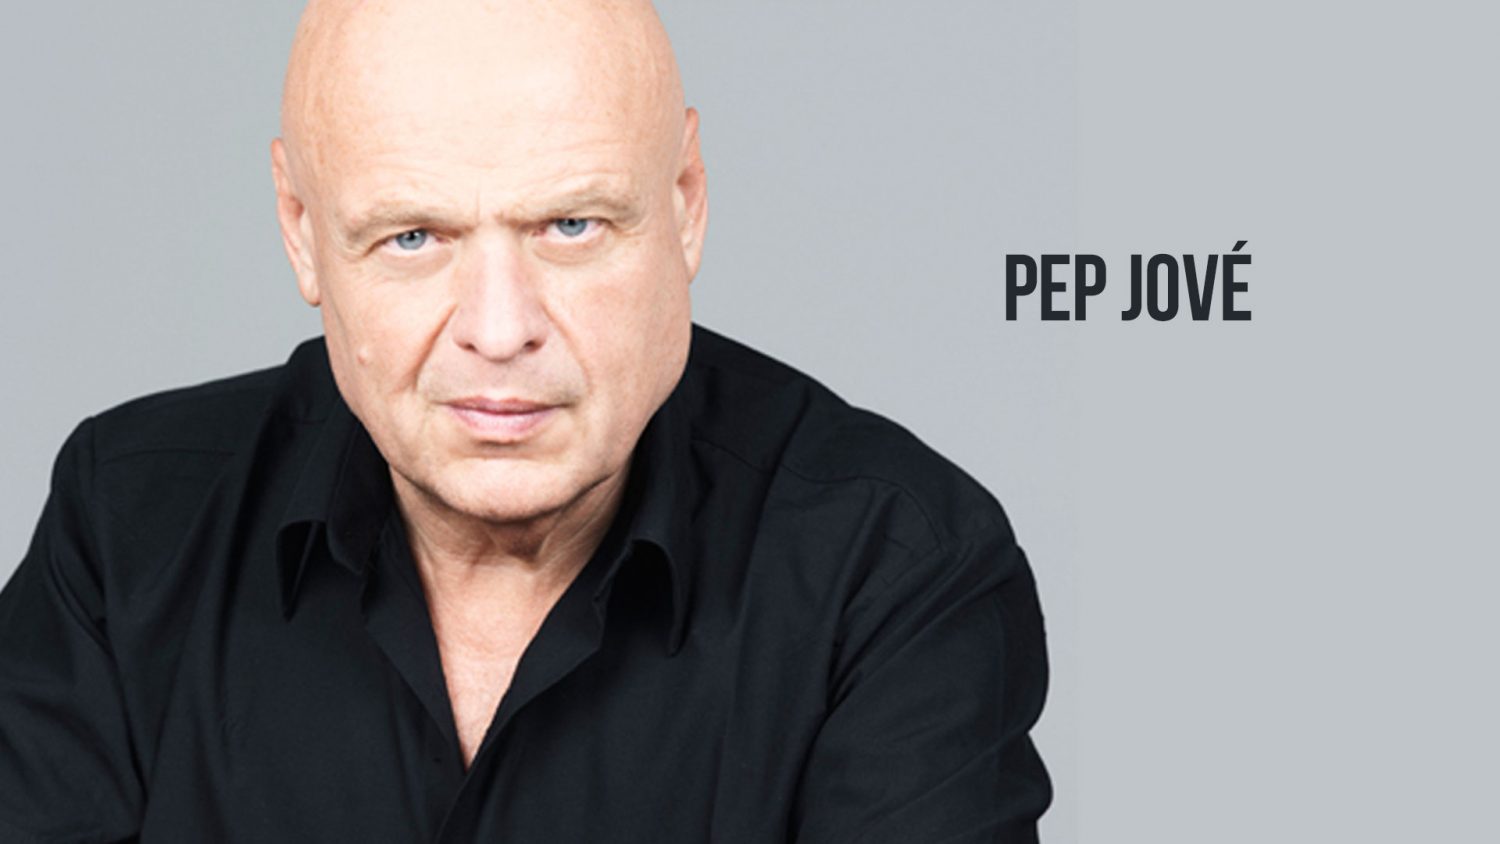 Pep Jové - Videobook Actor